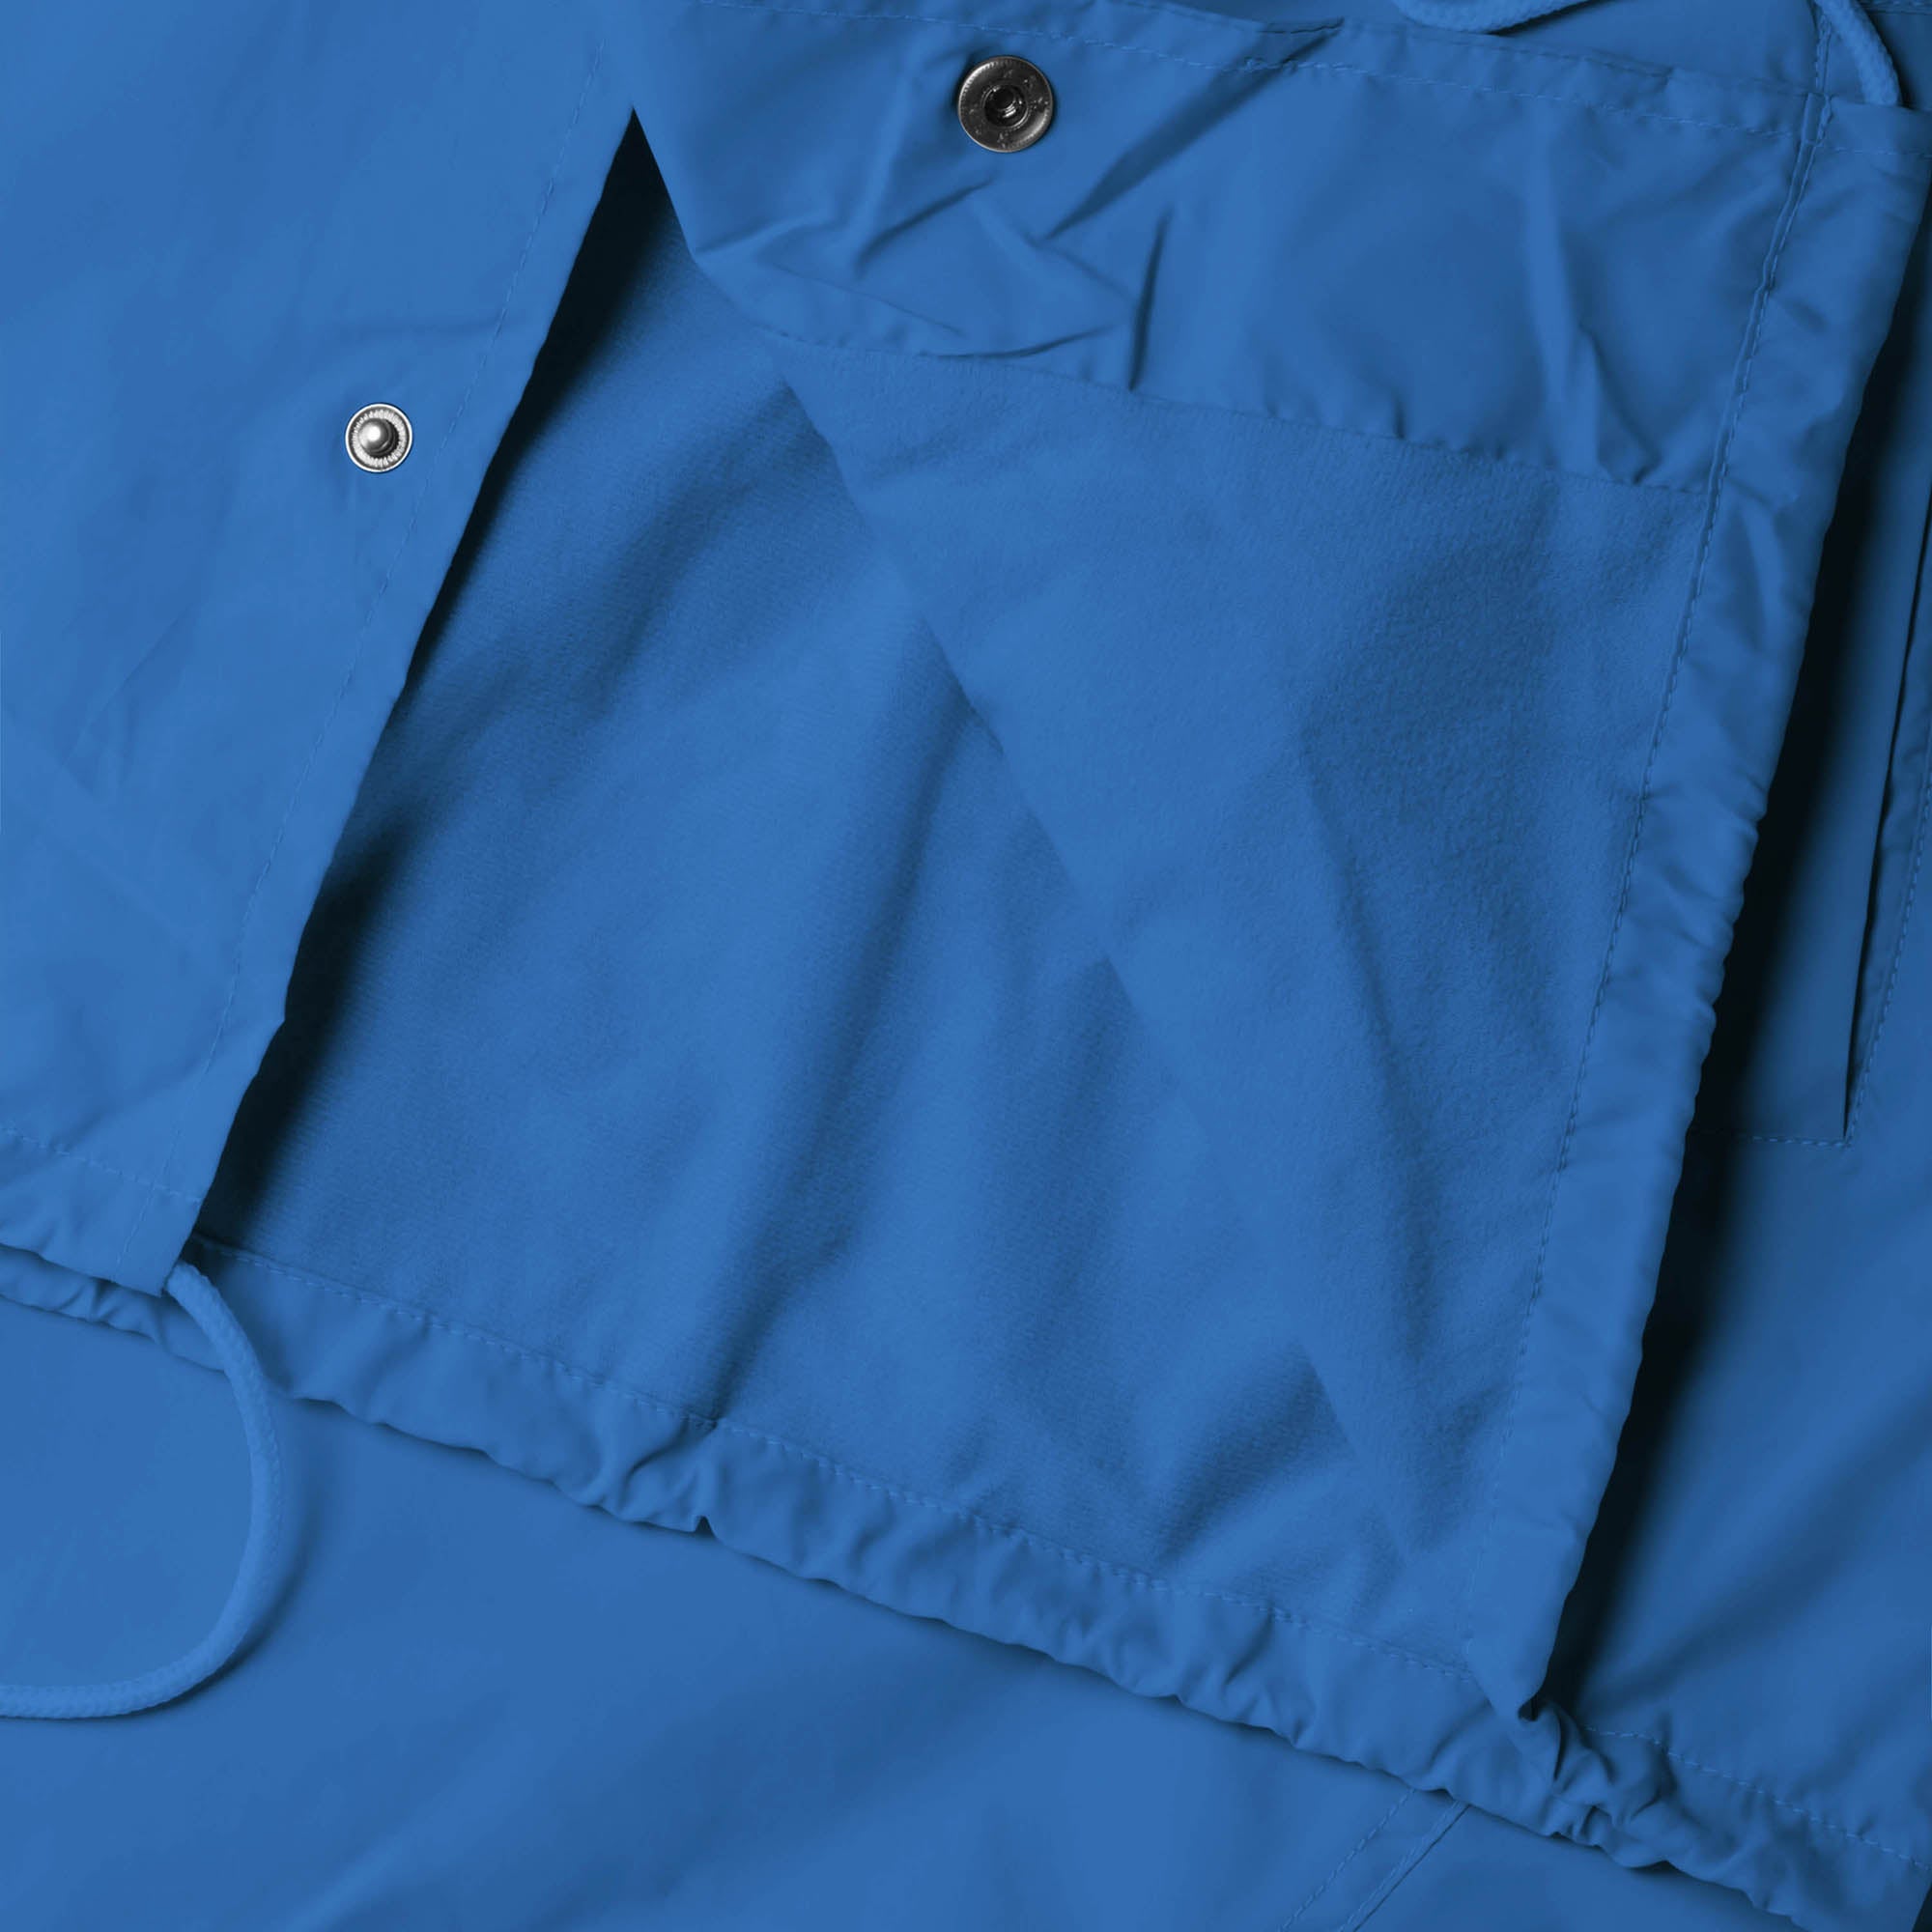 waterproof jacket_waterproofs_mens waterproof jacket_best rain jacket_lightweight waterproof jacket_water resistant jacket_Electric Blue